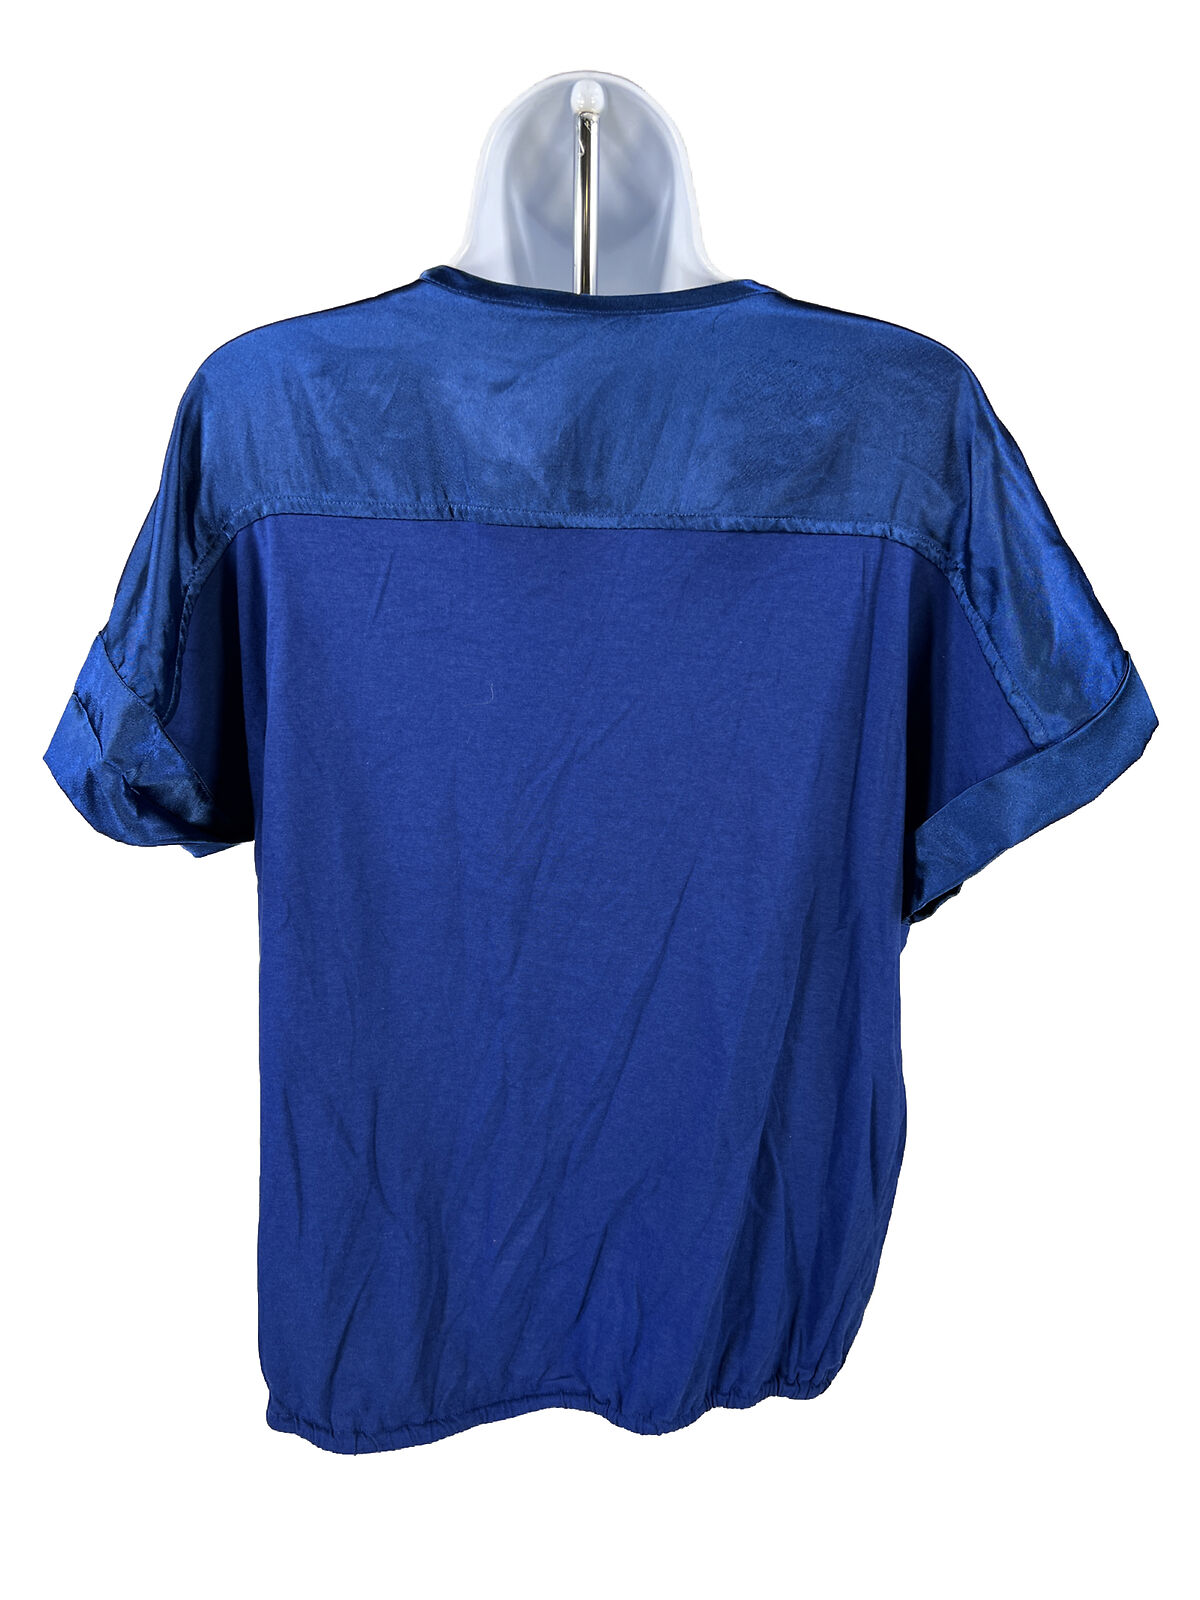 Chico's Camiseta azul de manga corta con cuello en V y detalles de satén para mujer - 2/L